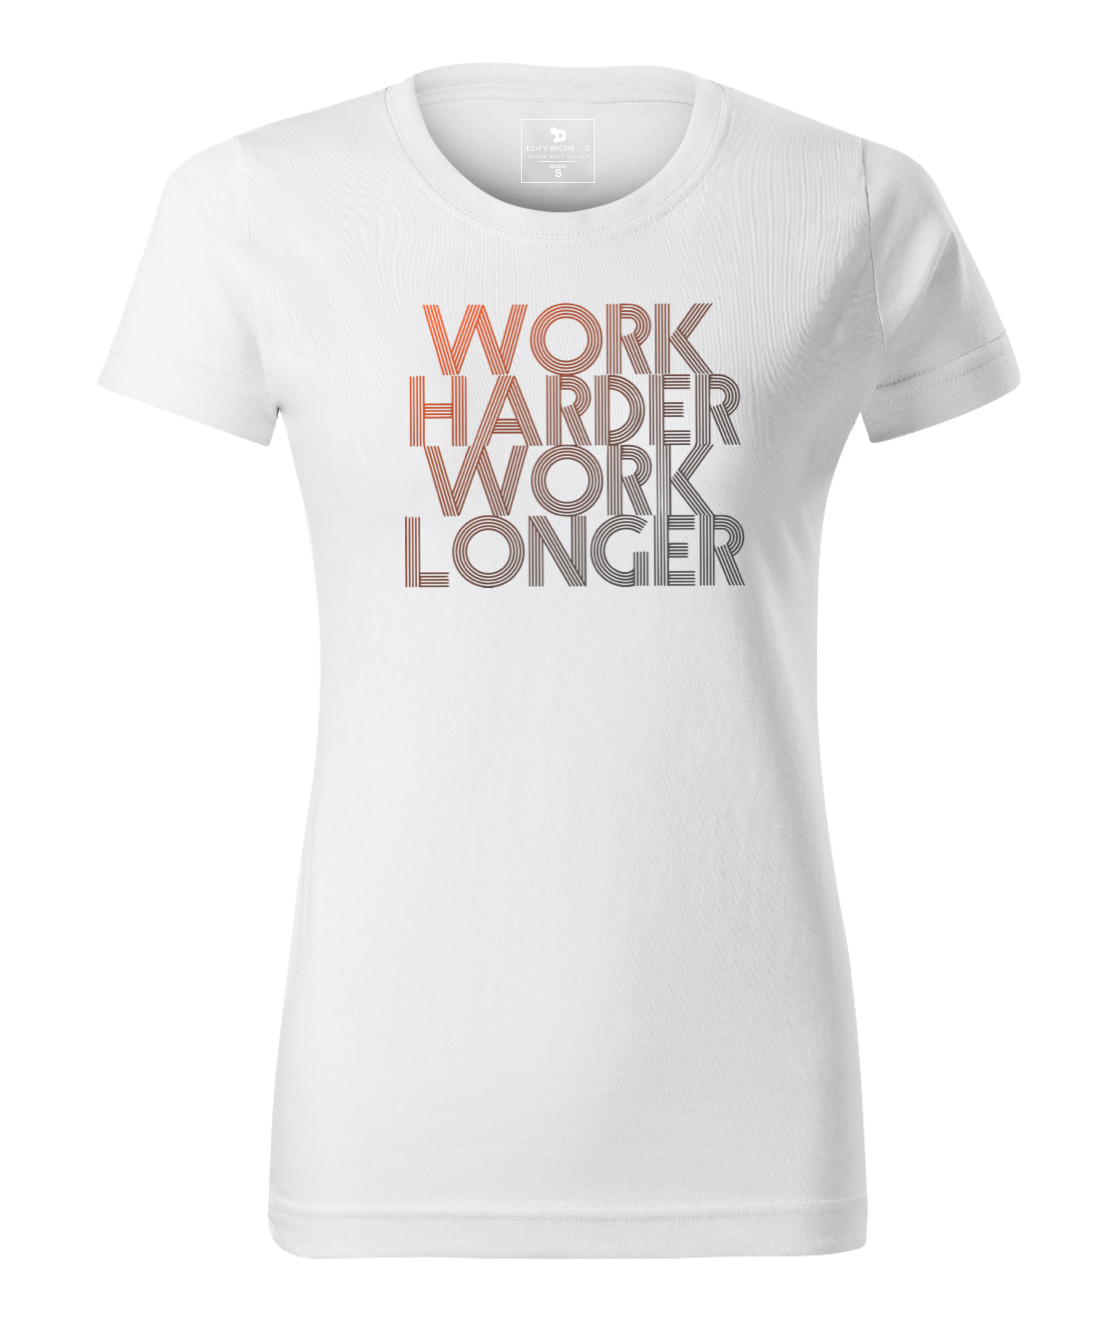 Work Harder Work Longer - Women's